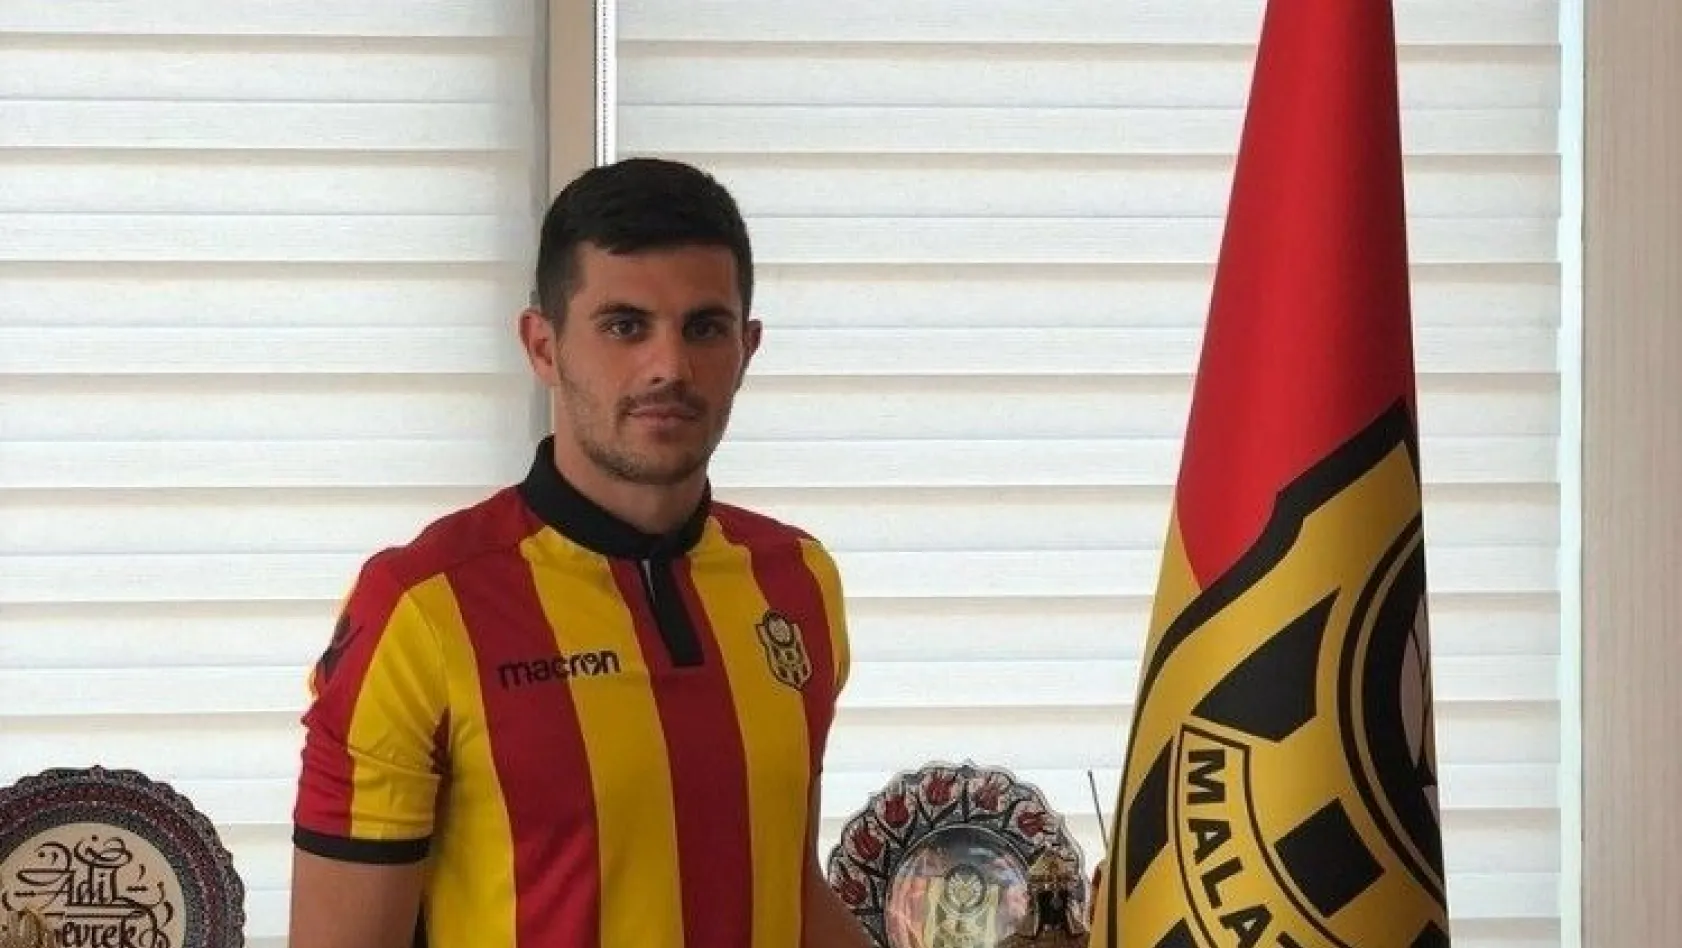 Yeni Malatyaspor'un yeni transferi Aleksic iddialı konuştu
